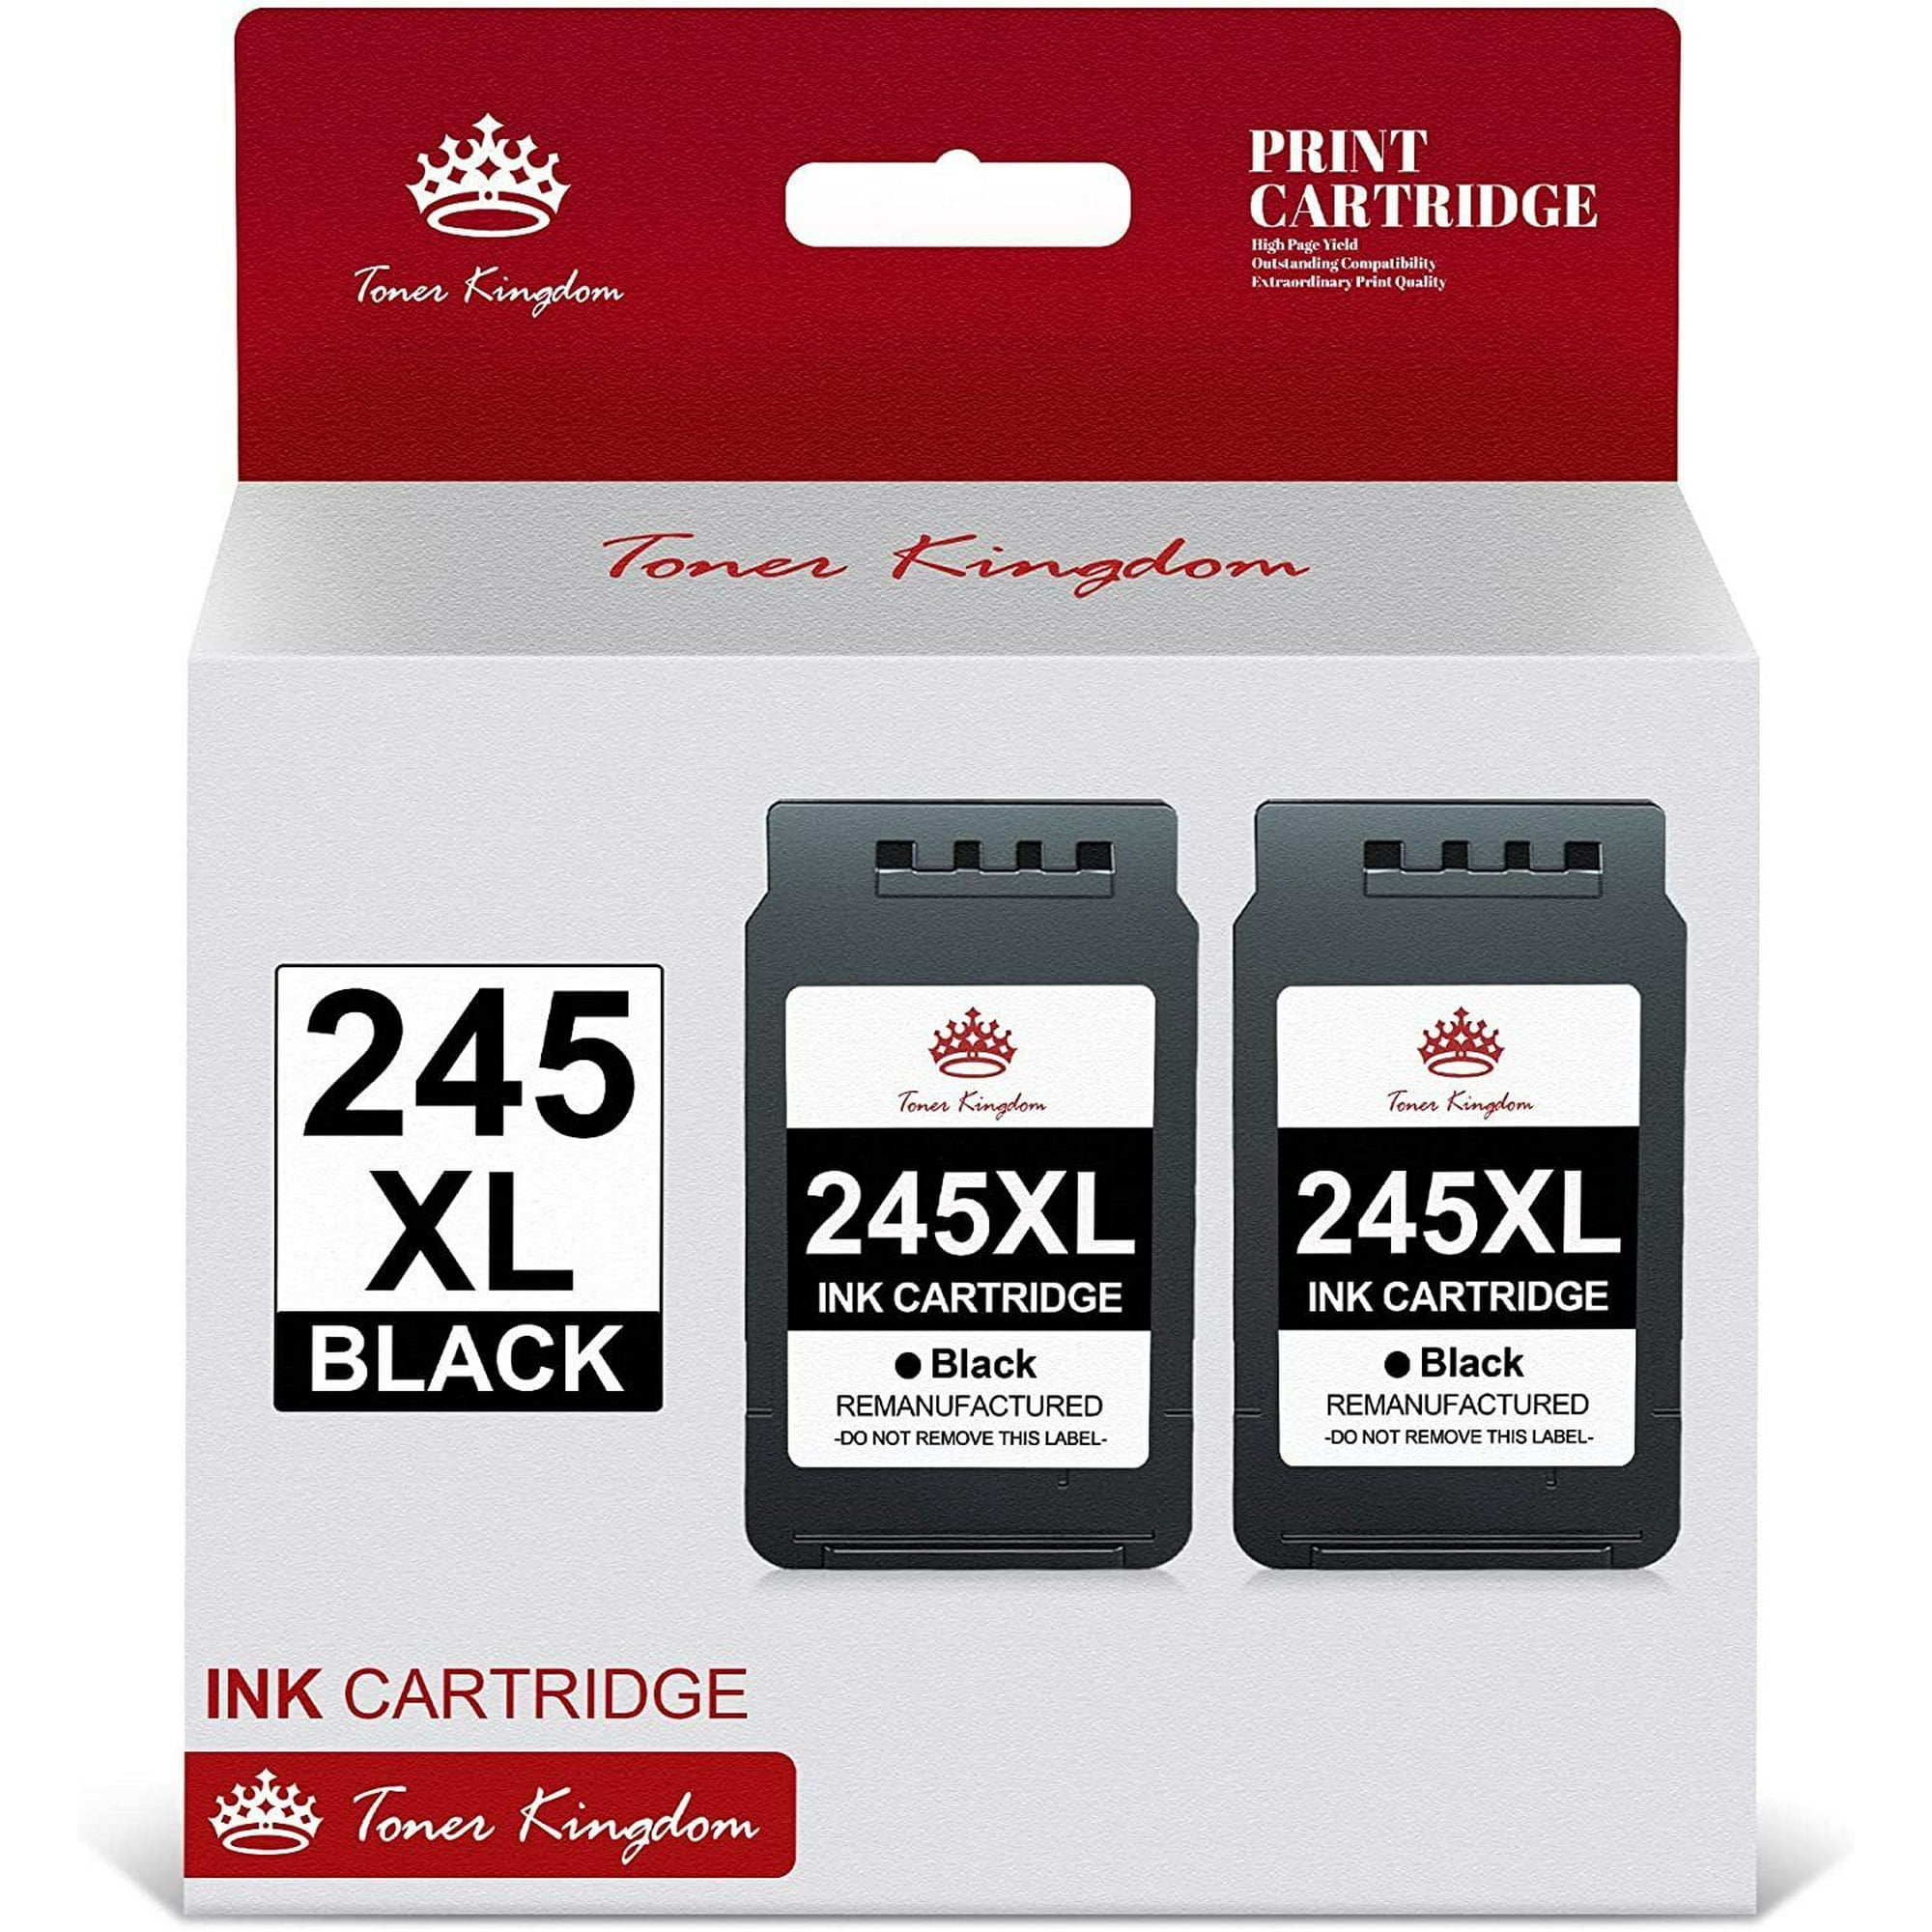 Ink & Toner-Toner Kingdom 245XL Ink Cartridges Canon Ink 245 PG 245